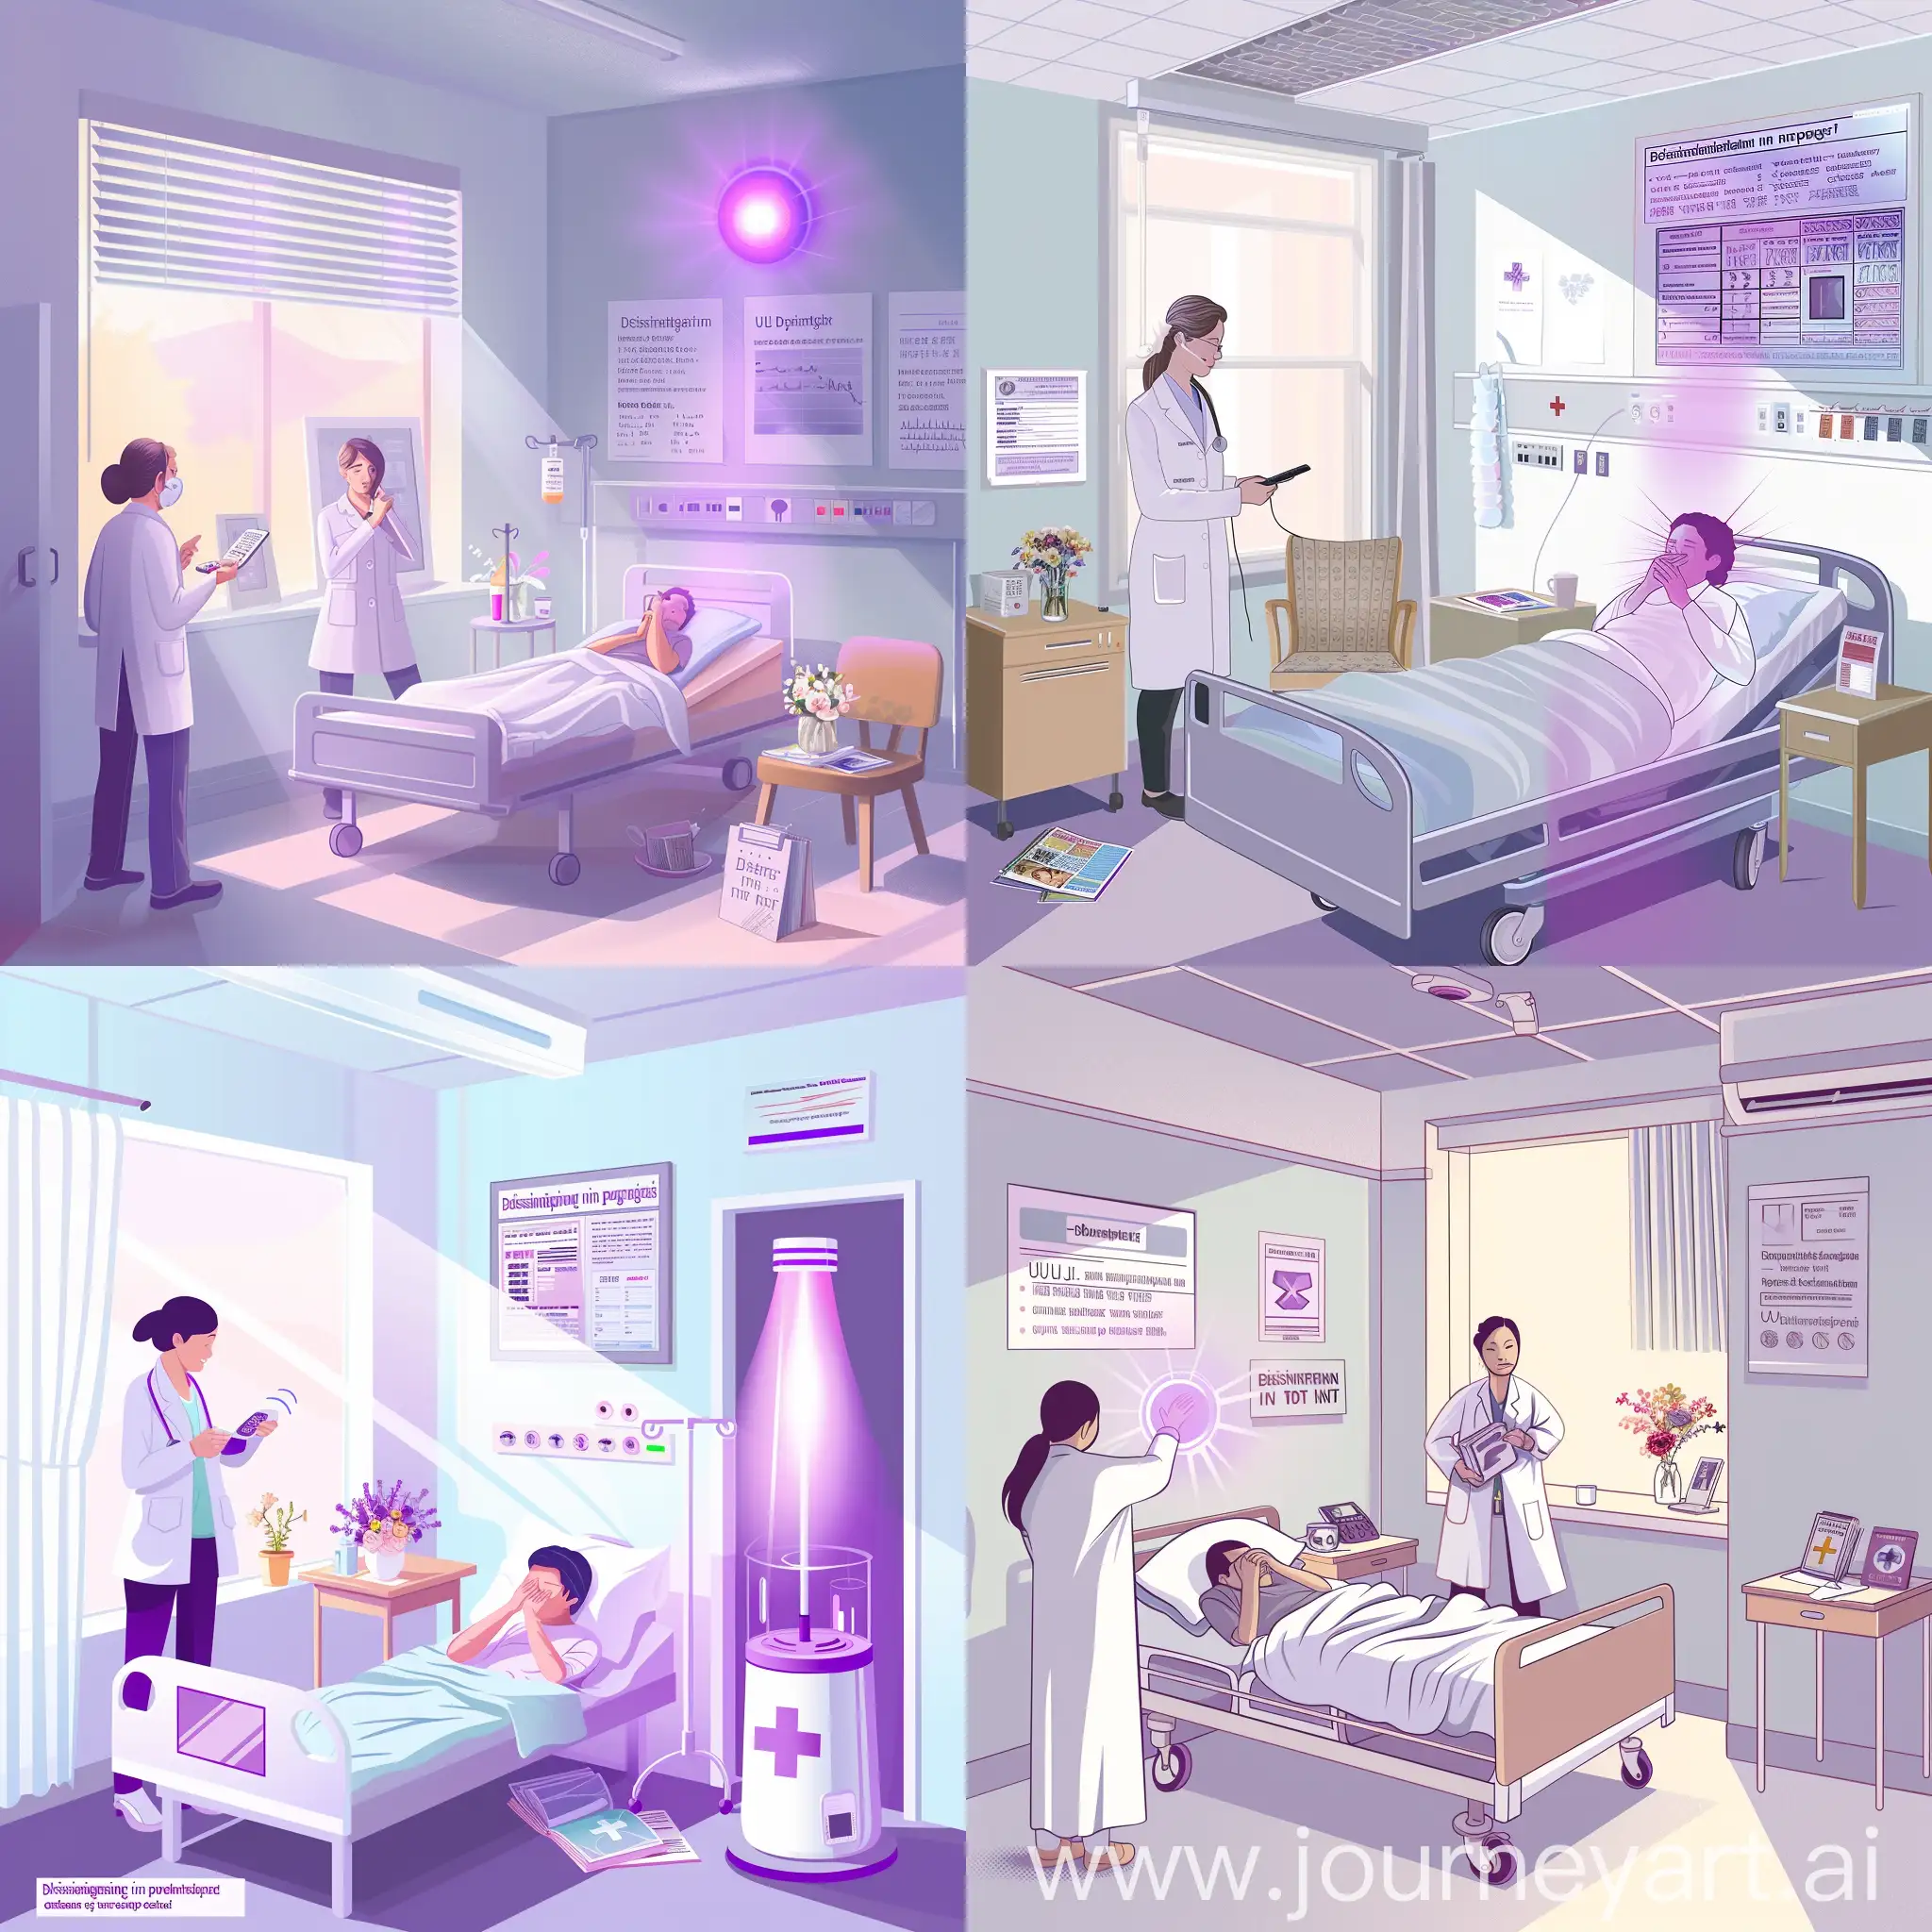 背景：医院病房内部，有一张病床、床头柜和一把椅子。墙上挂着一些医疗相关的图表和提示牌。

主要元素：

紫外线消毒灯：在图片的一角，可以看到一个紫外线消毒灯的轮廓，它的灯管发出紫色的光线。
护理人员：一名穿着护士服的护理人员站在病房门口，她正操作着一个遥控器，表情专注。
病人：在病床上躺着一位病人，用手臂遮挡眼睛，表情显示出不适。
医生：一位穿着白大褂的医生正在向病人解释情况，旁边放着一些医疗文件和紫外线消毒的说明书。
细节：

病房的窗户半开着，阳光透过窗户洒进来，与紫外线灯的光线形成对比。
病房内有一些小物件，如水杯、花束和一本杂志，这些细节增加了场景的真实感。
在床头柜上，有一张“消毒进行中，请勿进入”的警示牌。
色彩与光影：

病房的整体色调以白色和淡蓝色为主，营造出清洁、宁静的氛围。
紫外线灯发出的紫色光线在画面中形成鲜明的对比，突出其重要性。
光影的处理要体现出紫外线灯的强烈照射效果，同时也要表现出病房内温馨的氛围。